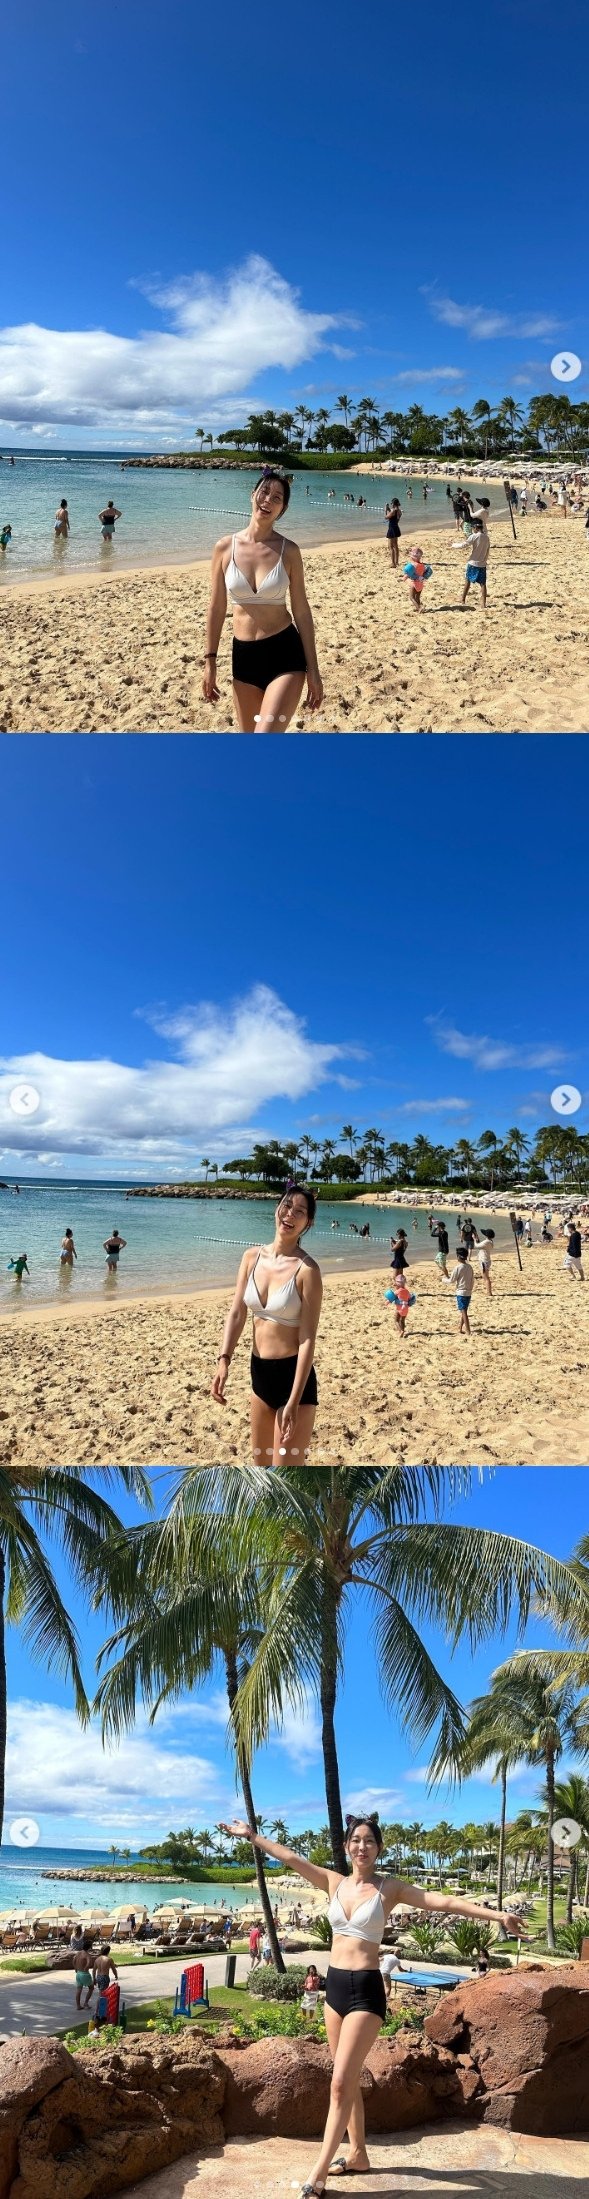 이지혜, 하와이 해변서 뽐낸 글래머 몸매…과감한 비키니